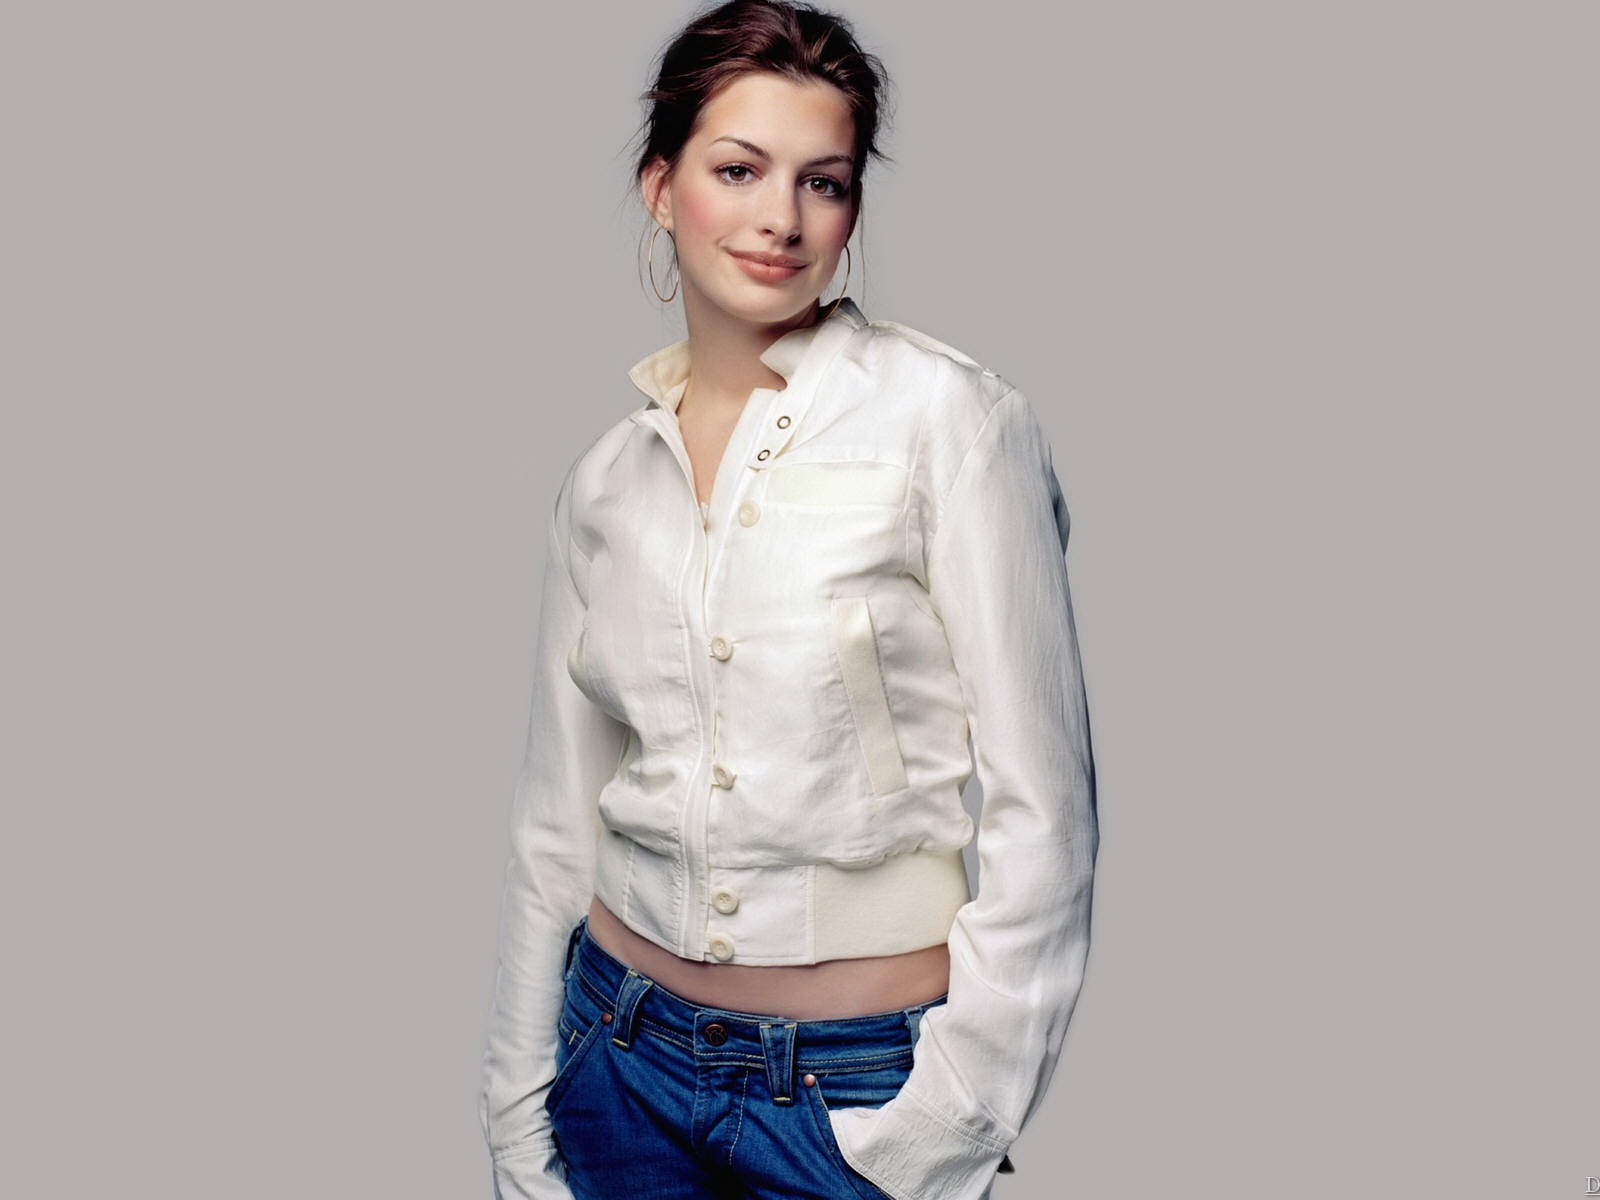 Anne Hathaway 安妮·海瑟薇 美女壁纸(二)15 - 1600x1200